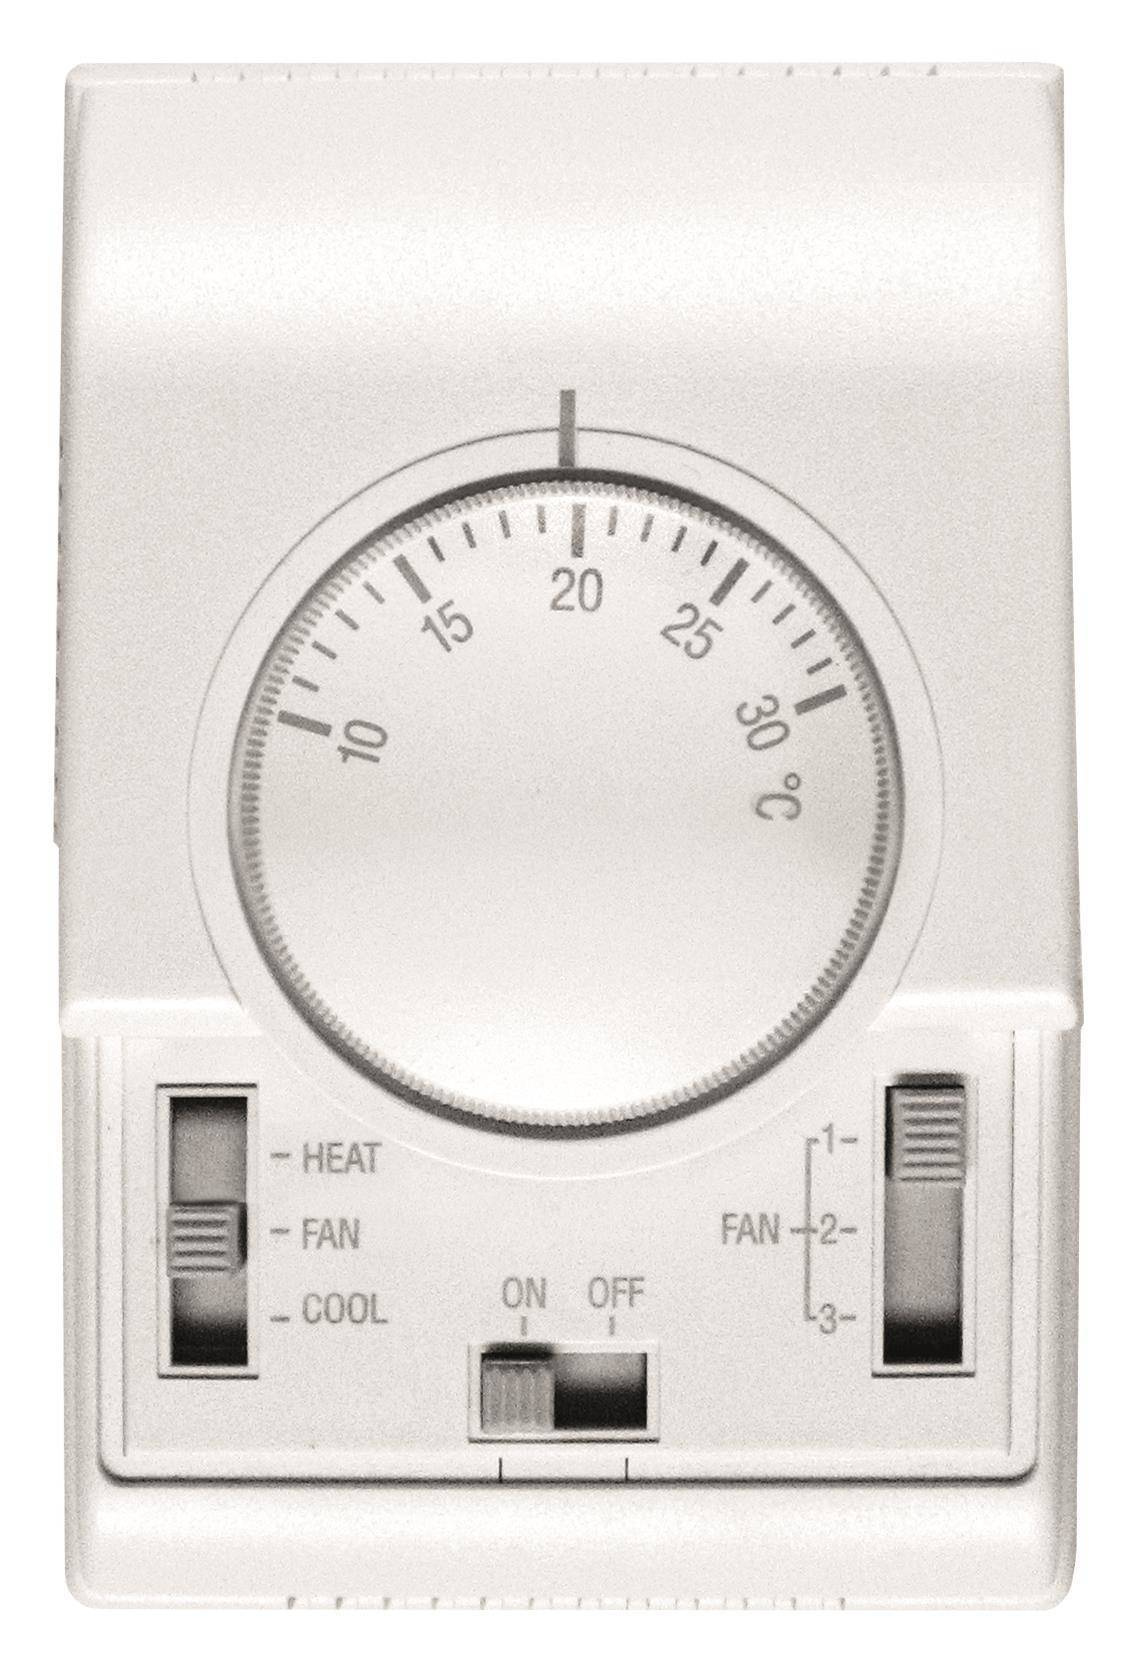 Water heater FLOWAIR LEO S1 12.8kW 12in1 + TS controller